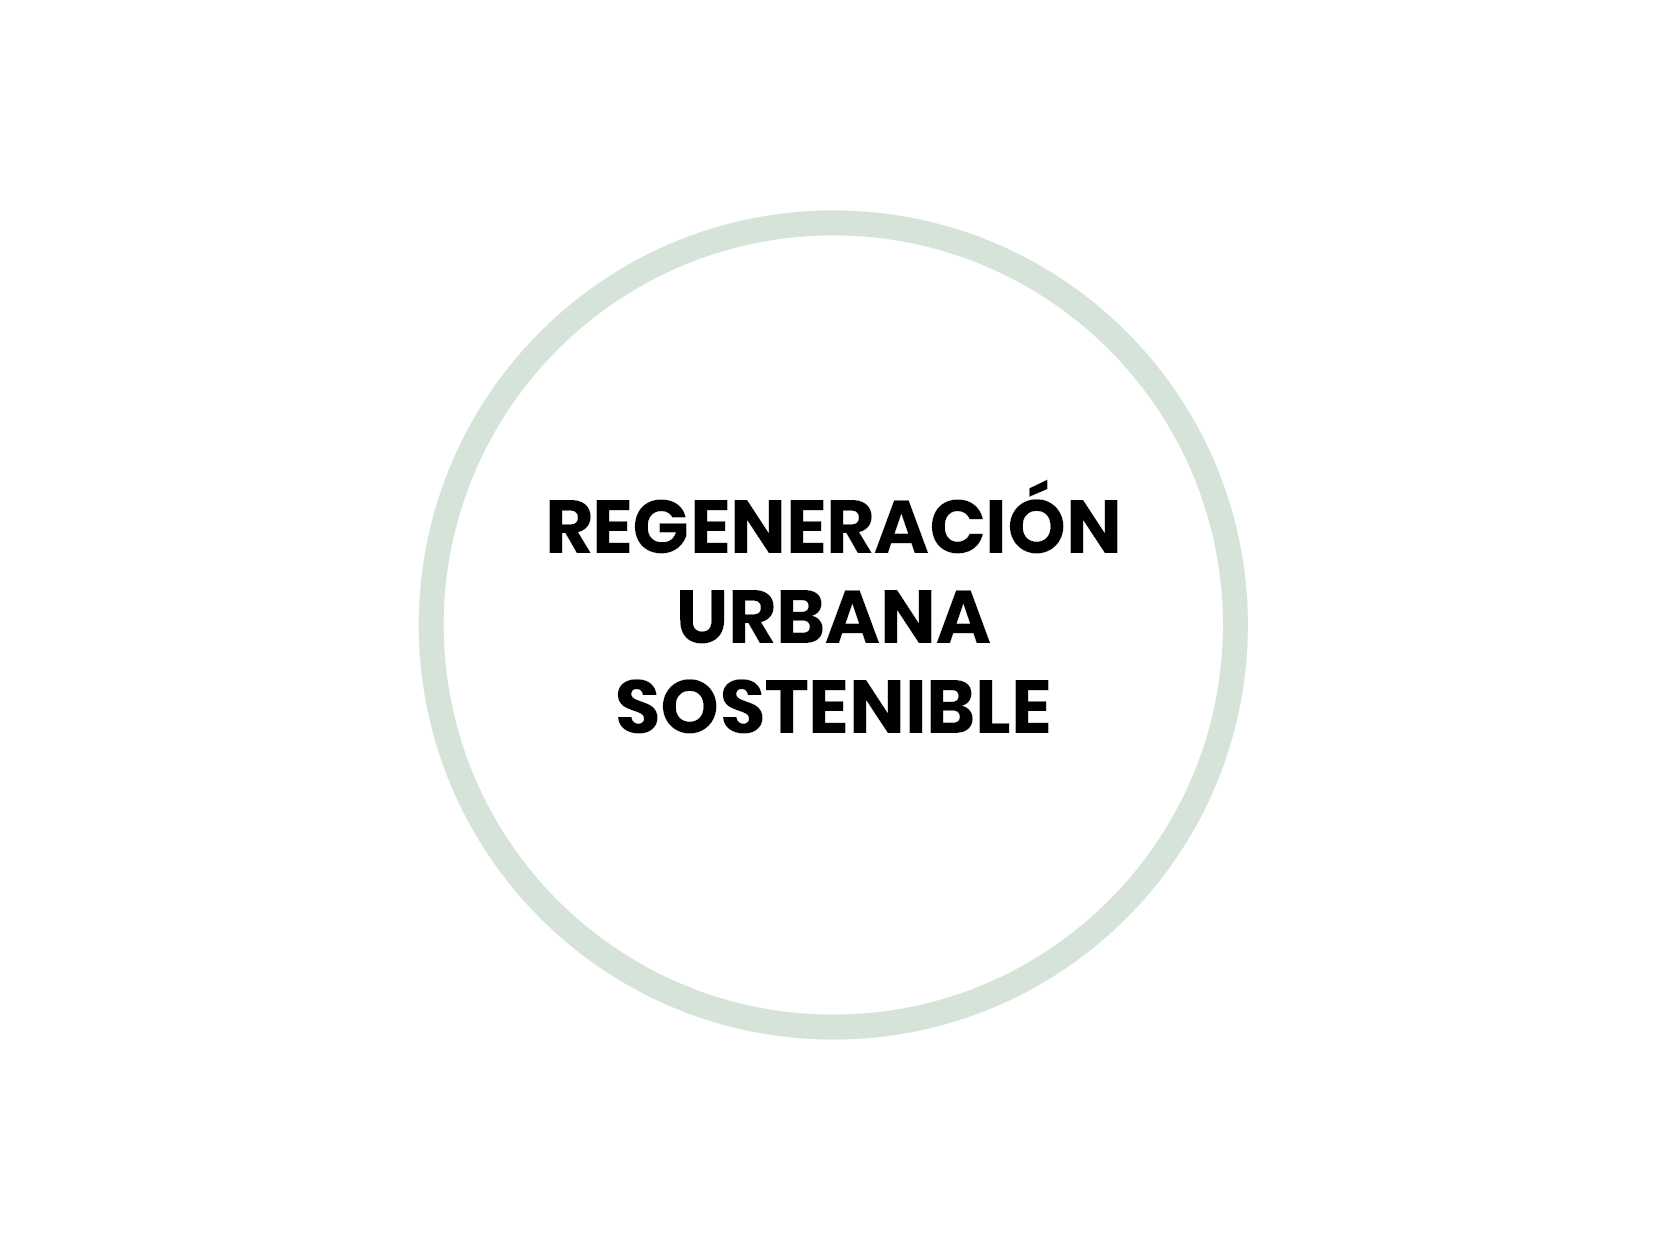 Regeneración urbana sostenible